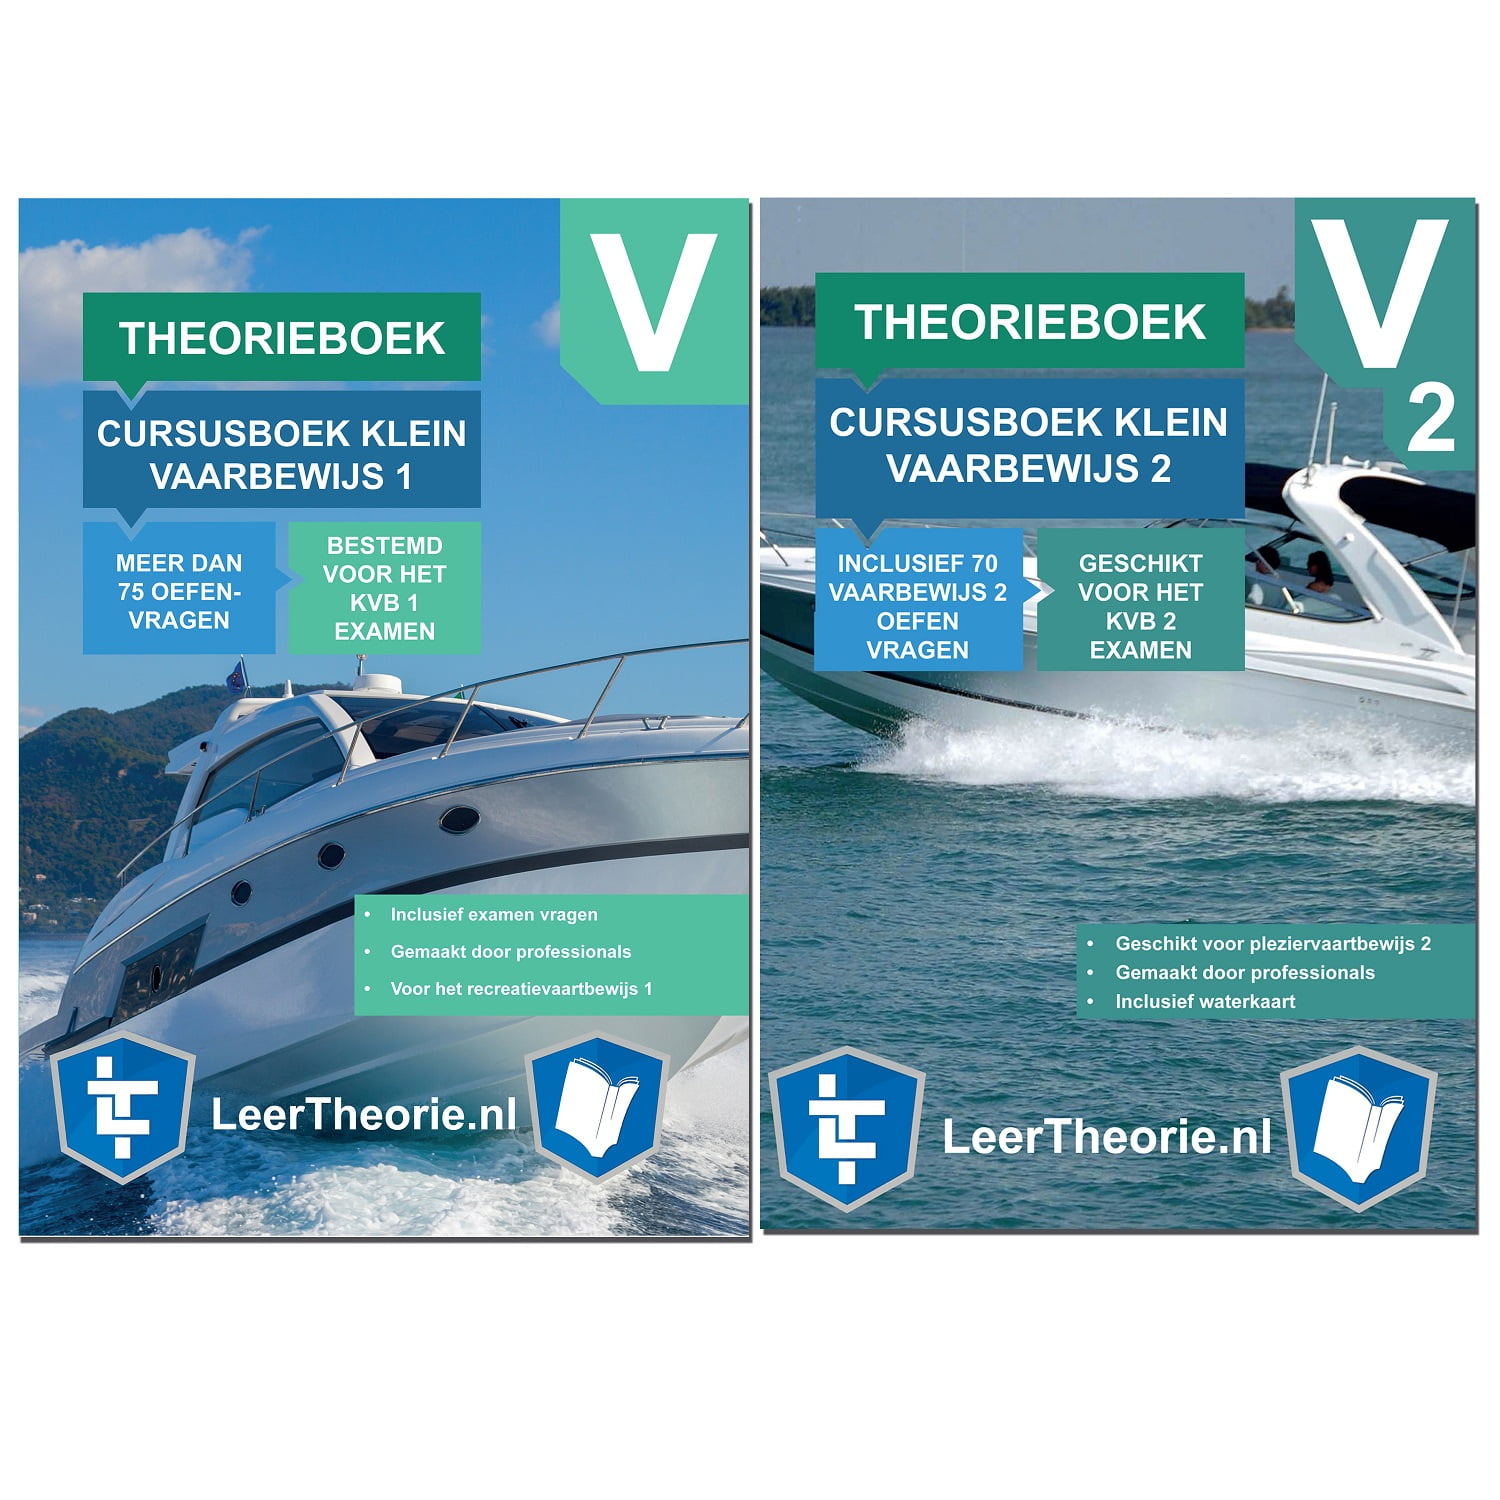 leertheorie.nl - Theorieboek Cursusboek - Klein Vaarbewijs 1 - Klein Vaarbewijs 2 - Nederland - KVB 1 - KVB1 - KVB 2 - KVB2 - LeerTheorie